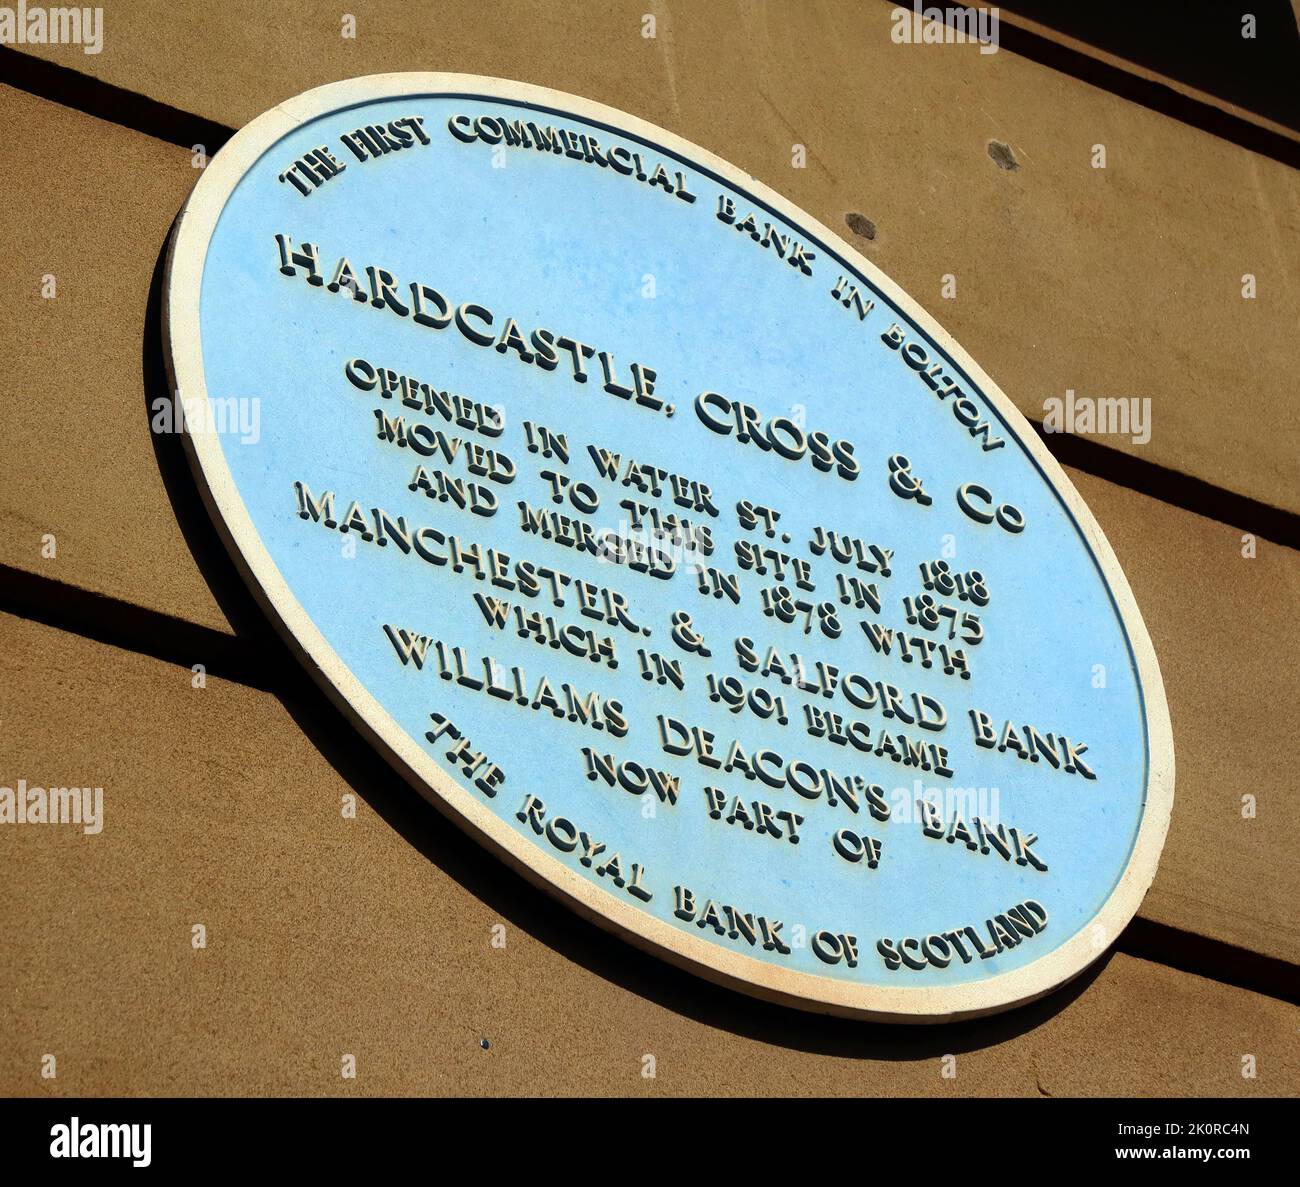 Plaque bleue, Hardcastle Cross & Co, première banque commerciale à Bolton, Water Street, Greater Manchester, Angleterre, Royaume-Uni, BL1 1TR Banque D'Images